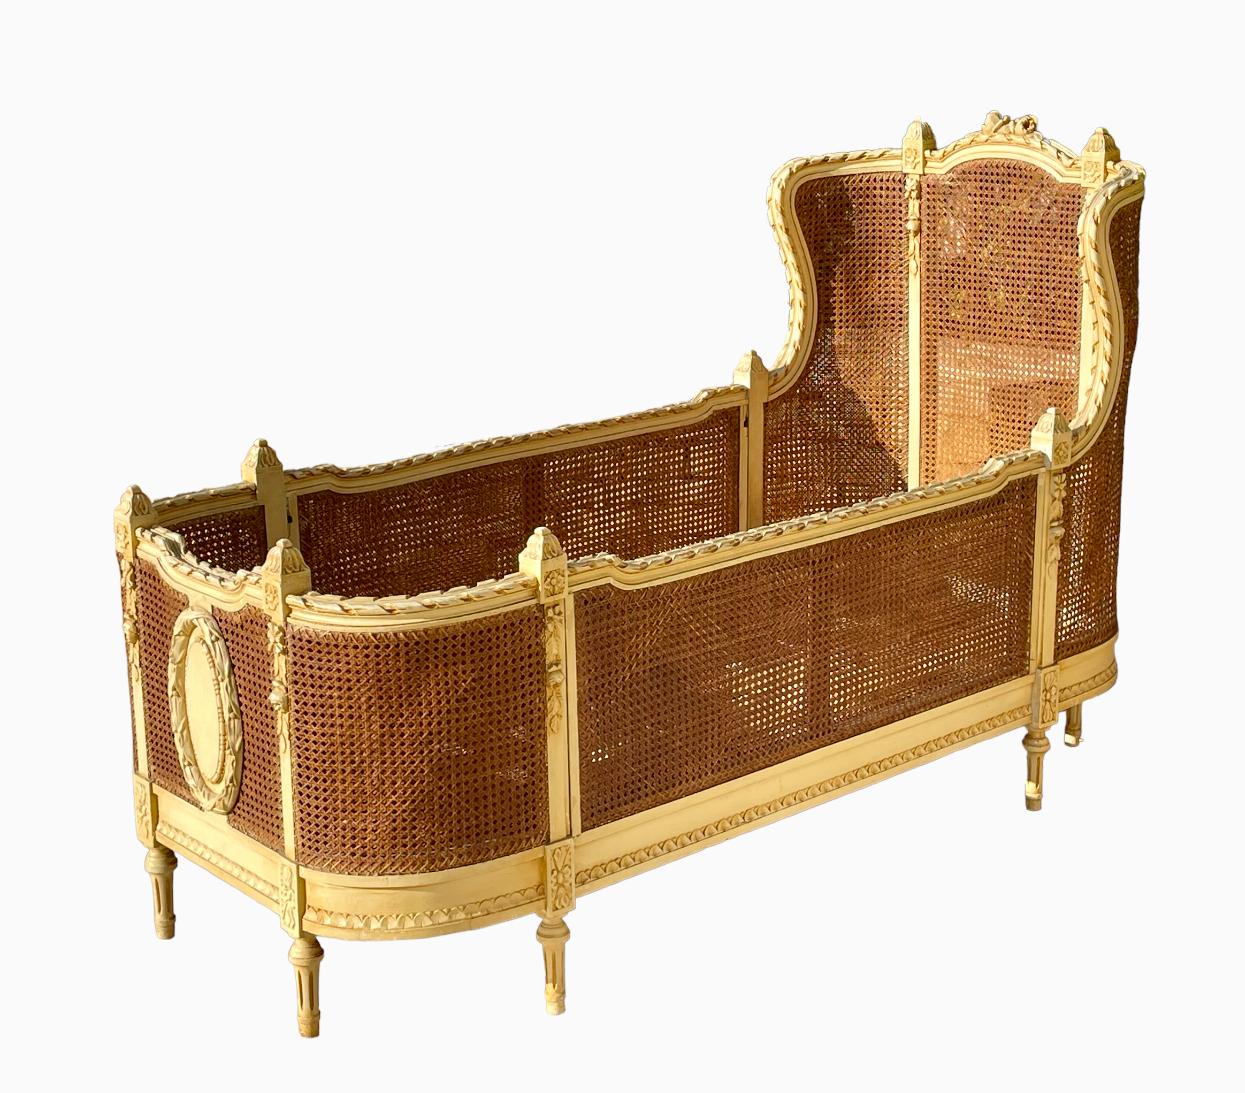 Seltenes und prächtiges Kinderbett aus doppeltem Kantholz und beige lackiertem Holz im Louis XVI-Stil. Im 19. Jahrhundert wurden nur sehr wenige Kinderbetten in diesem Stil hergestellt, so dass es sich um ein seltenes Modell handelt. Dieses Bett ist